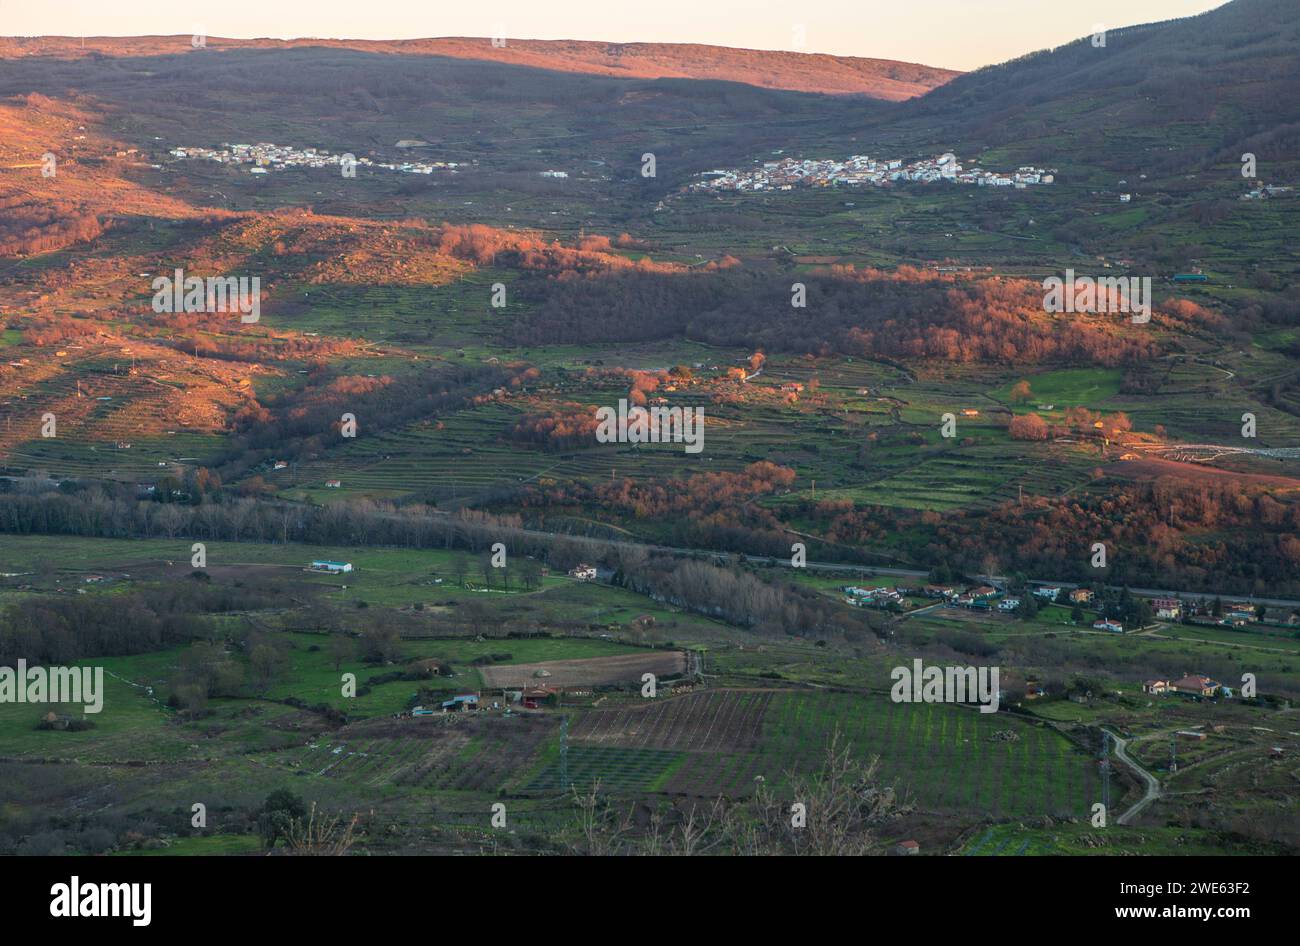 Blick auf die Dörfer Casas del Castanar und Cabrero vom Aussichtspunkt Mirador de la Memoria. El Torno, Caceres, Spanien Stockfoto